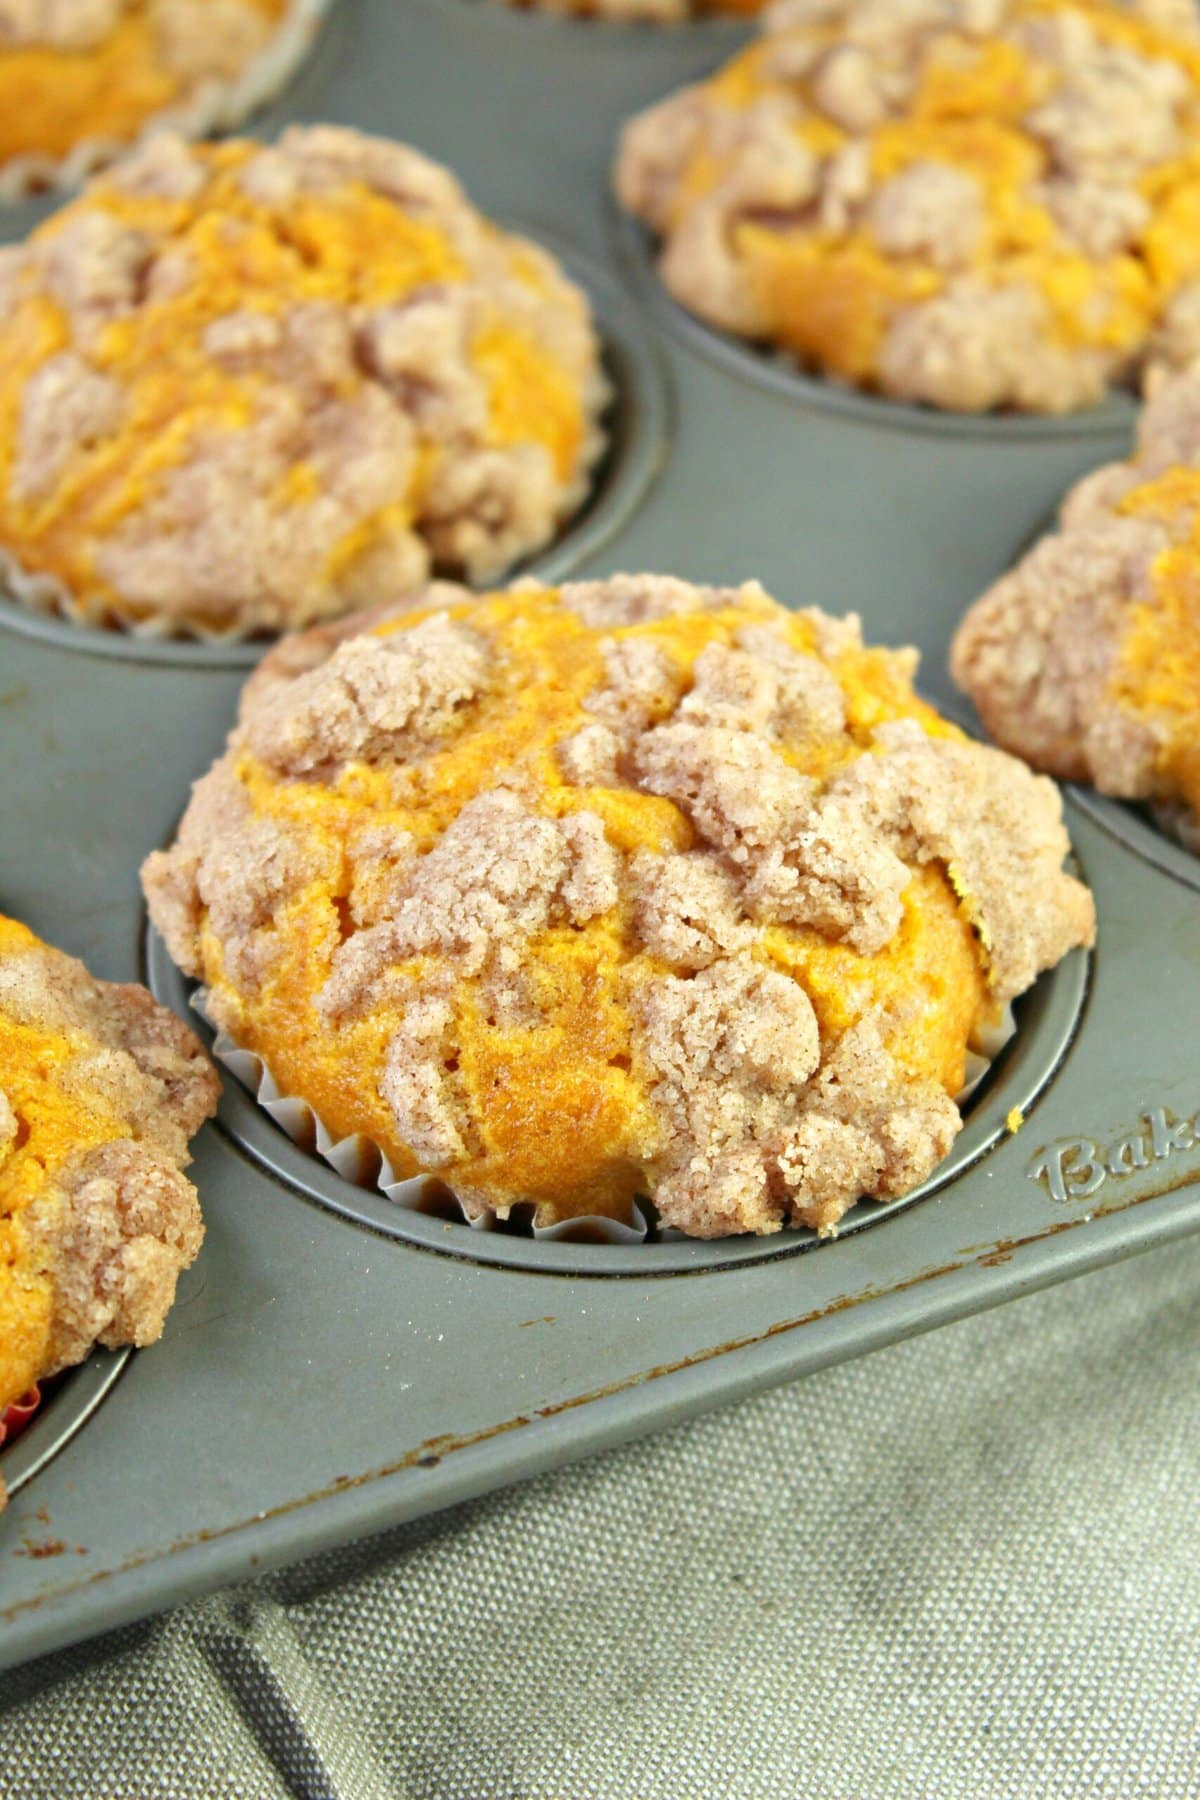 Pumpkin cream cheese muffins in a muffin pan